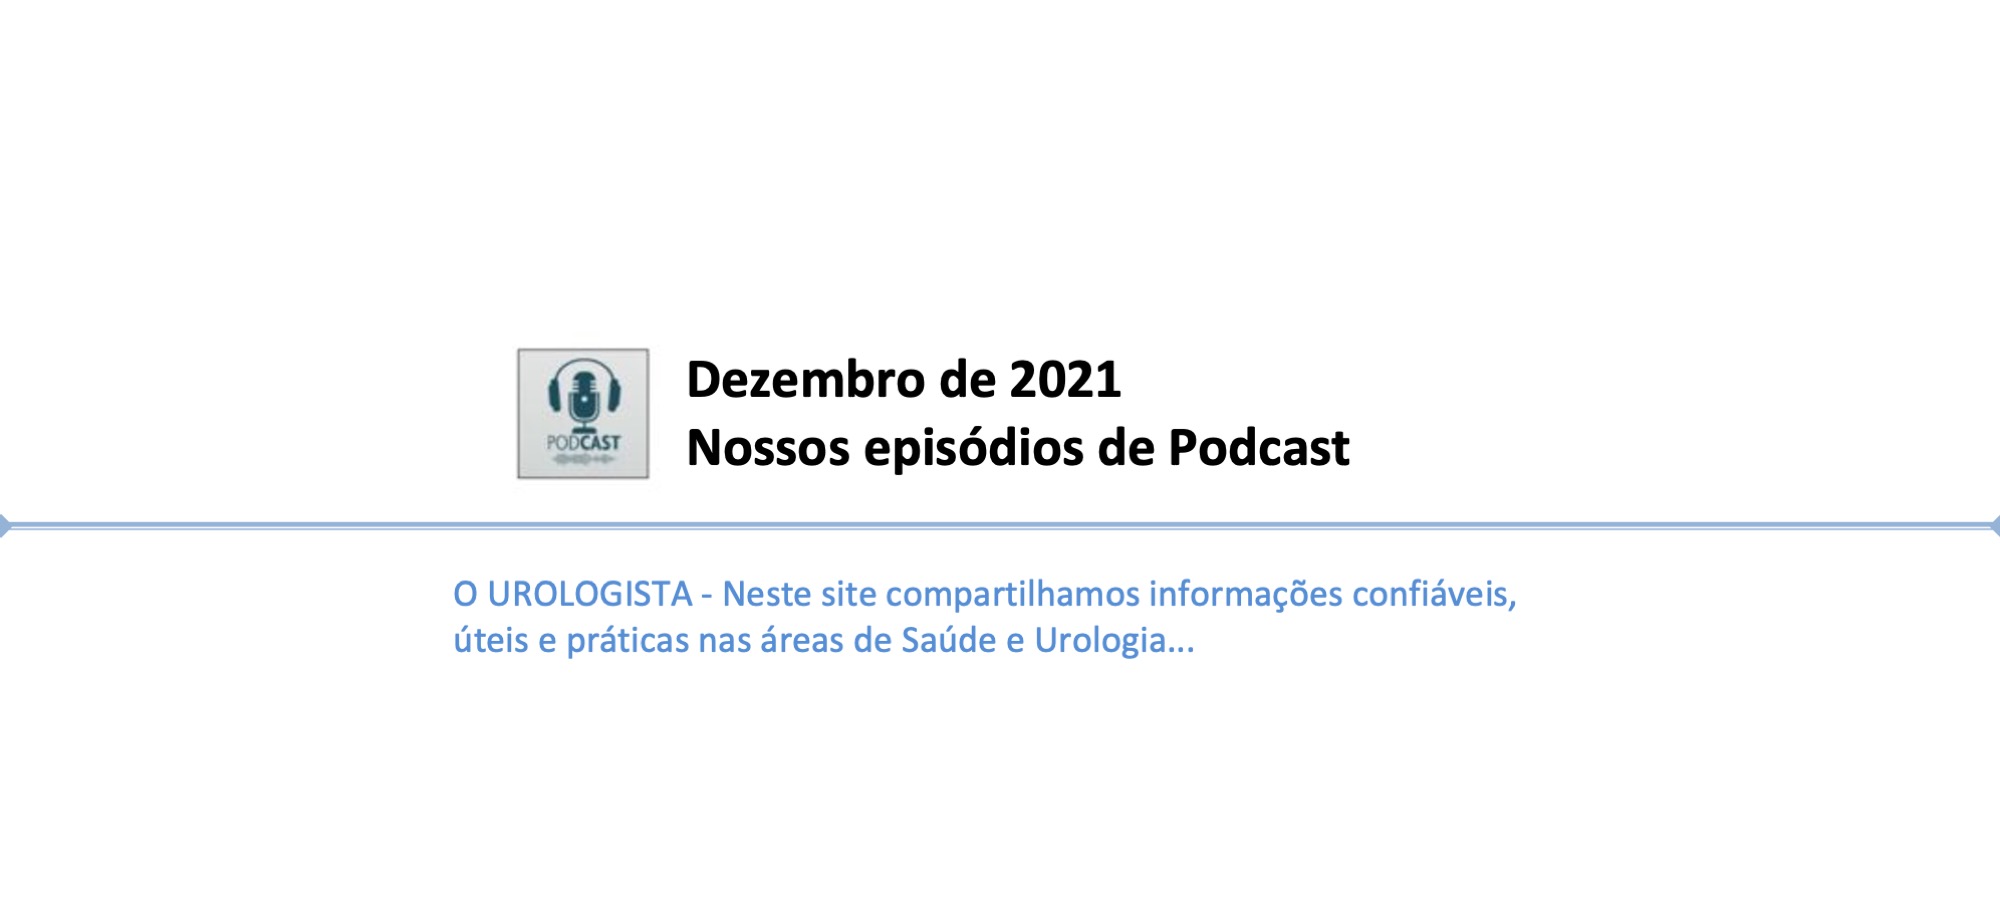 Podcast d'O Urologista - Episódios de dezembro de 2021